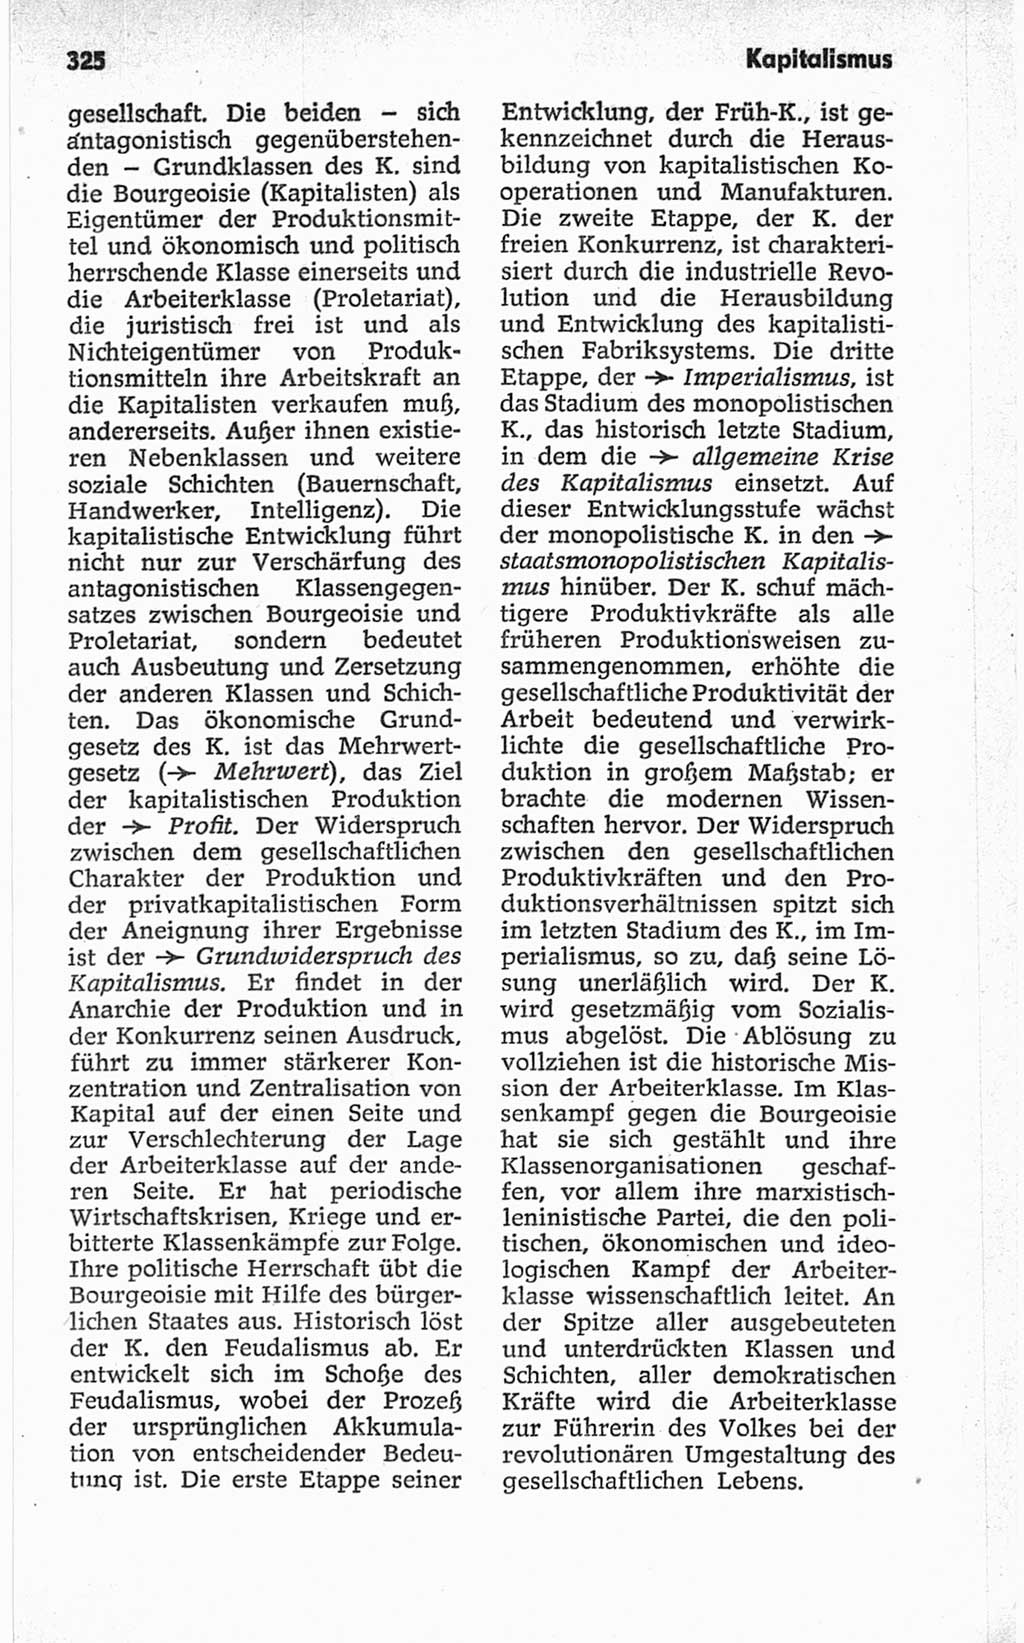 Kleines politisches Wörterbuch [Deutsche Demokratische Republik (DDR)] 1967, Seite 325 (Kl. pol. Wb. DDR 1967, S. 325)